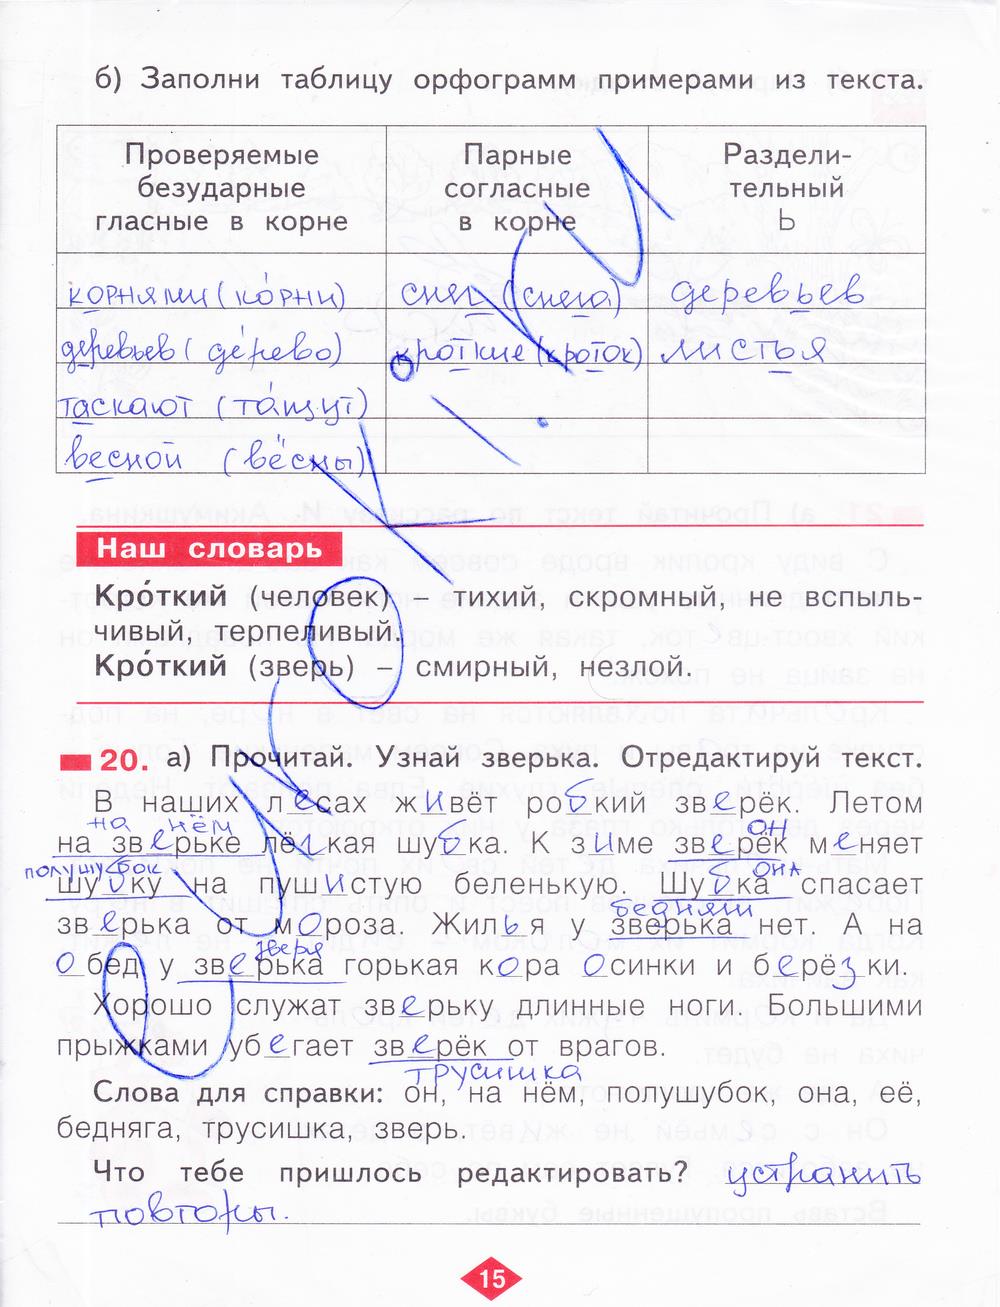 гдз 2 класс рабочая тетрадь часть 4 страница 15 русский язык Яковлева